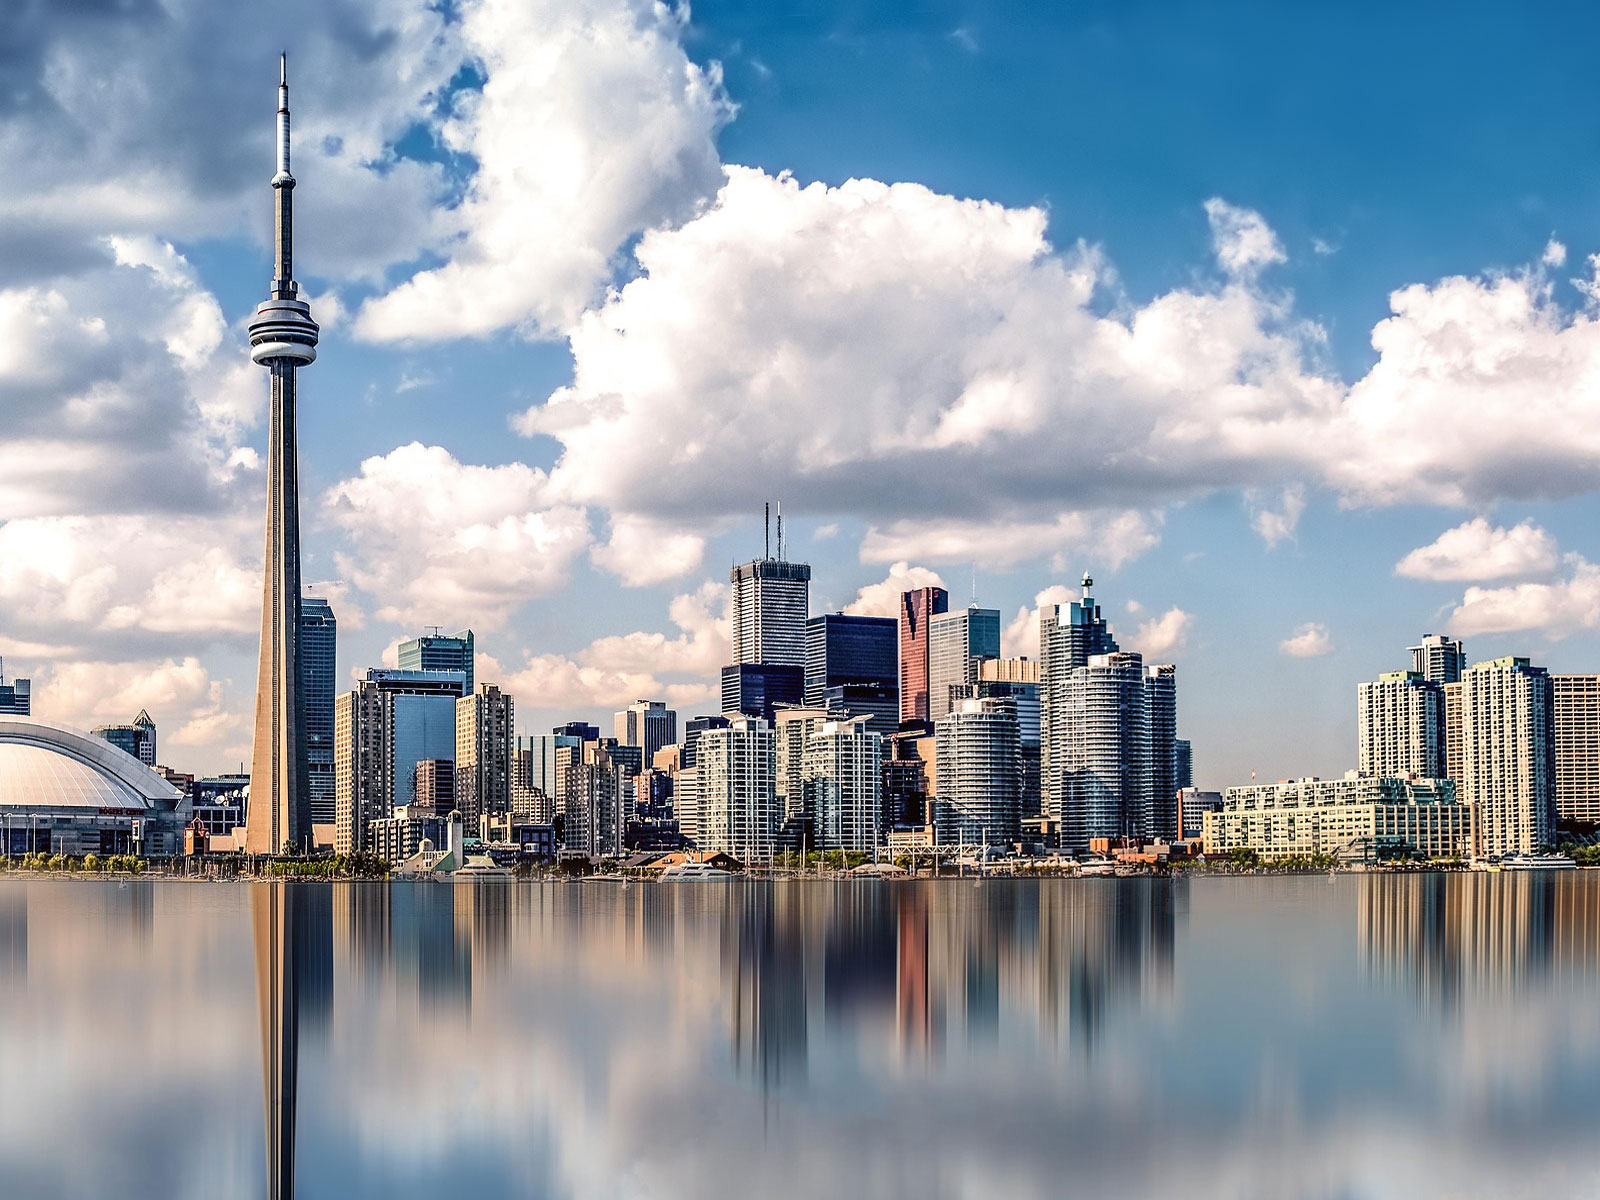 Toronto et la Tour CN l'une des plus hautes du monde 553 m antenne comprise